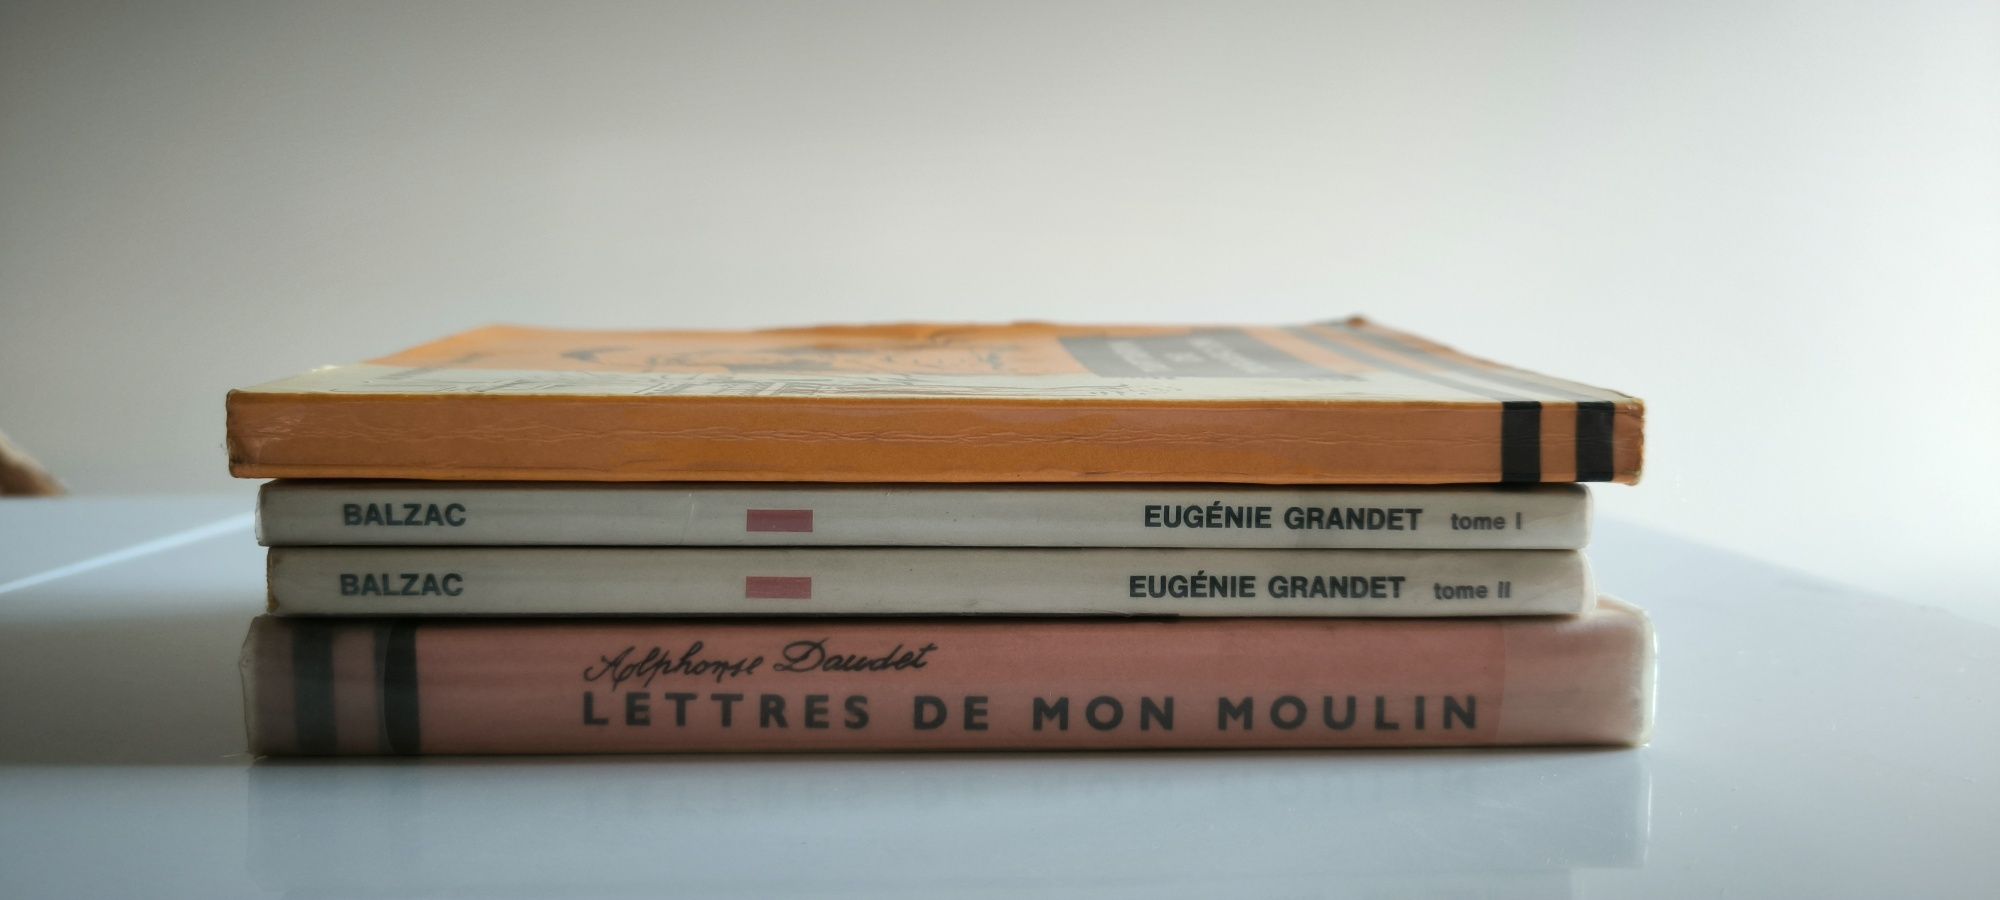 Livros clássicos e romances em Francês - edições históricas